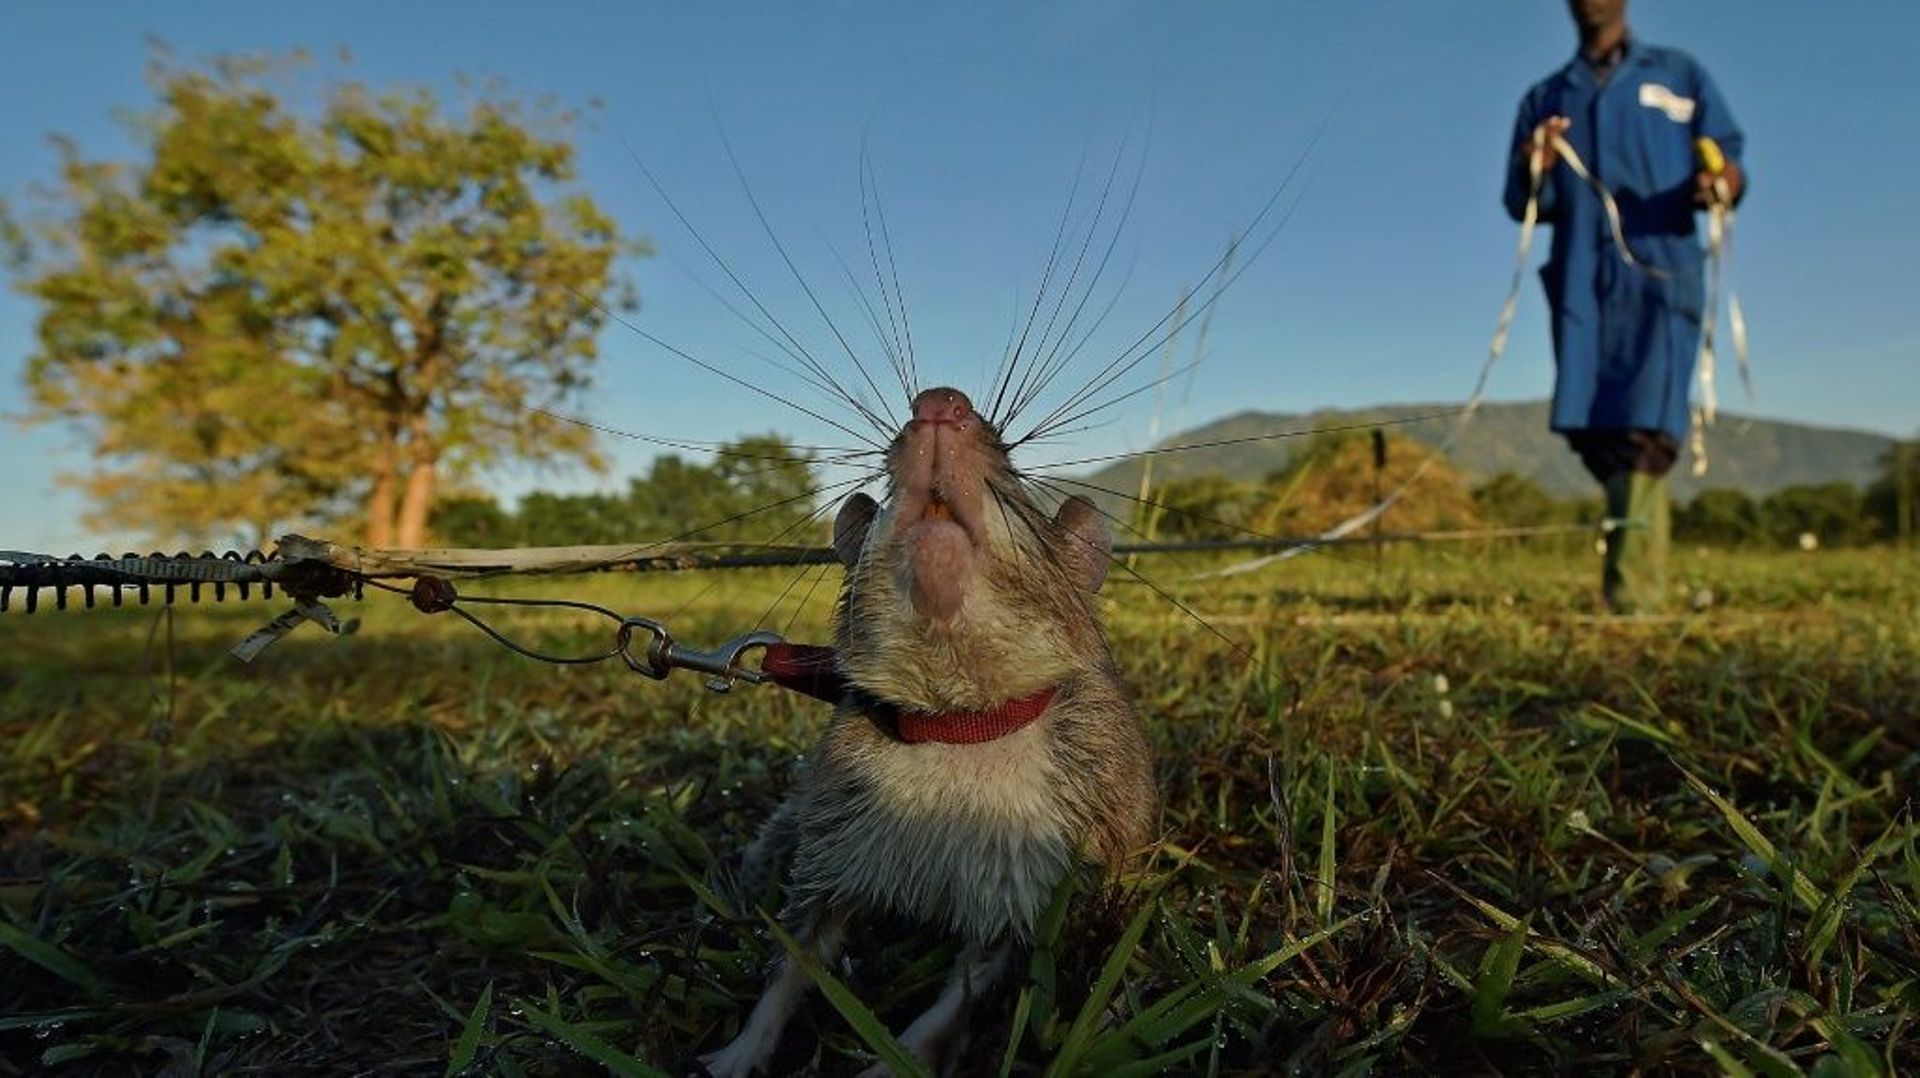 Un rat géant à la recherche de mines antipersonnel inactives dans le centre d'entraînement de l'ONG Apopo, à Morogoro, en Tanzanie, le 17 juin 2016